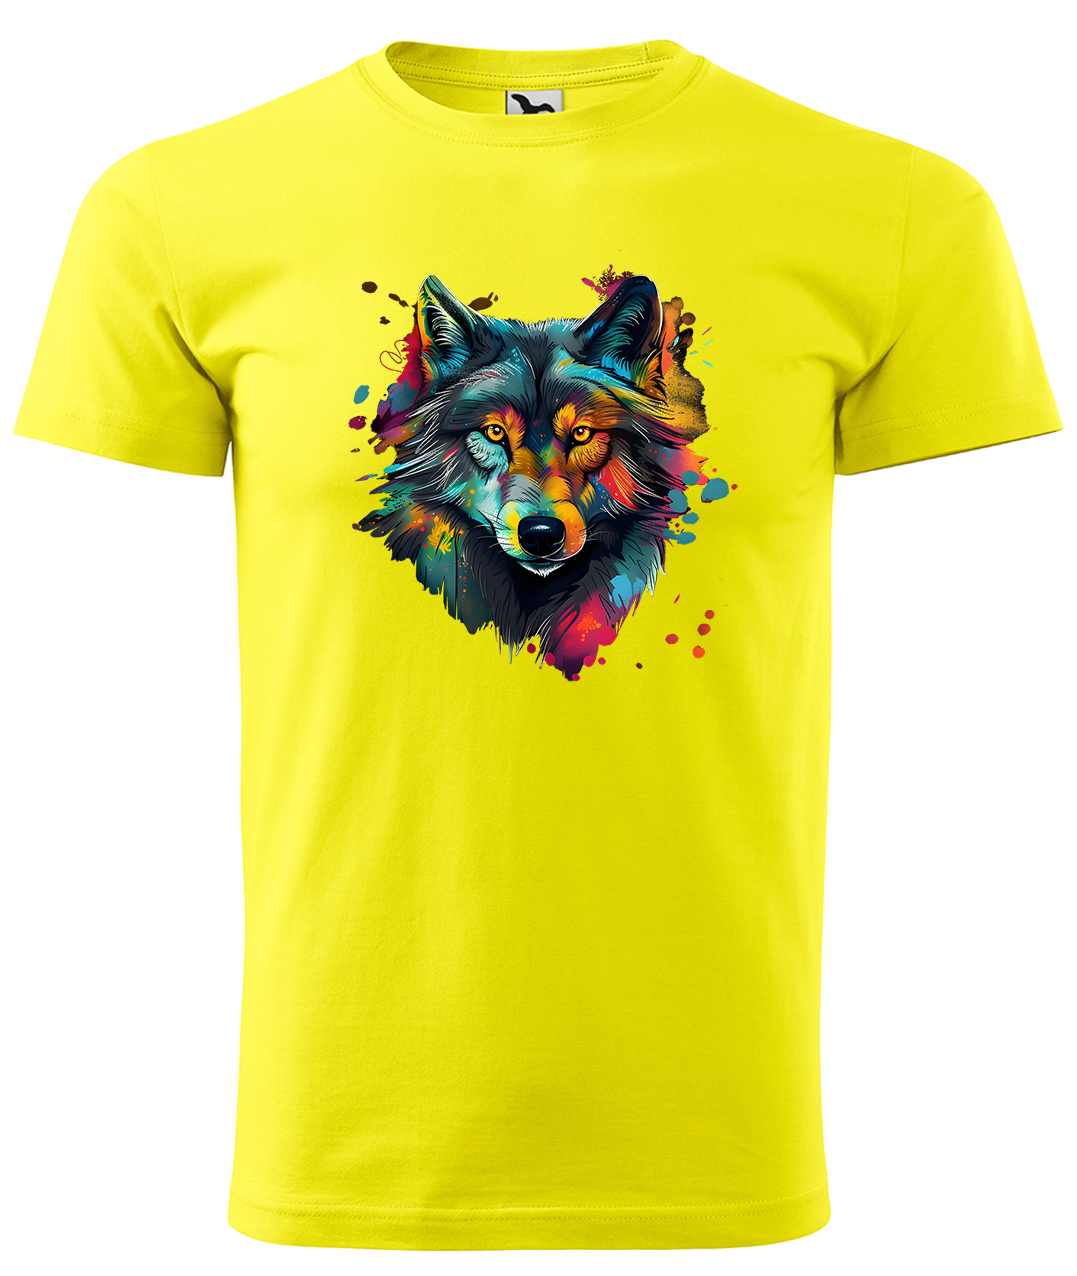 Dětské tričko s vlkem - Malovaný vlk Velikost: 4 roky / 110 cm, Barva: Žlutá (04), Délka rukávu: Krátký rukáv